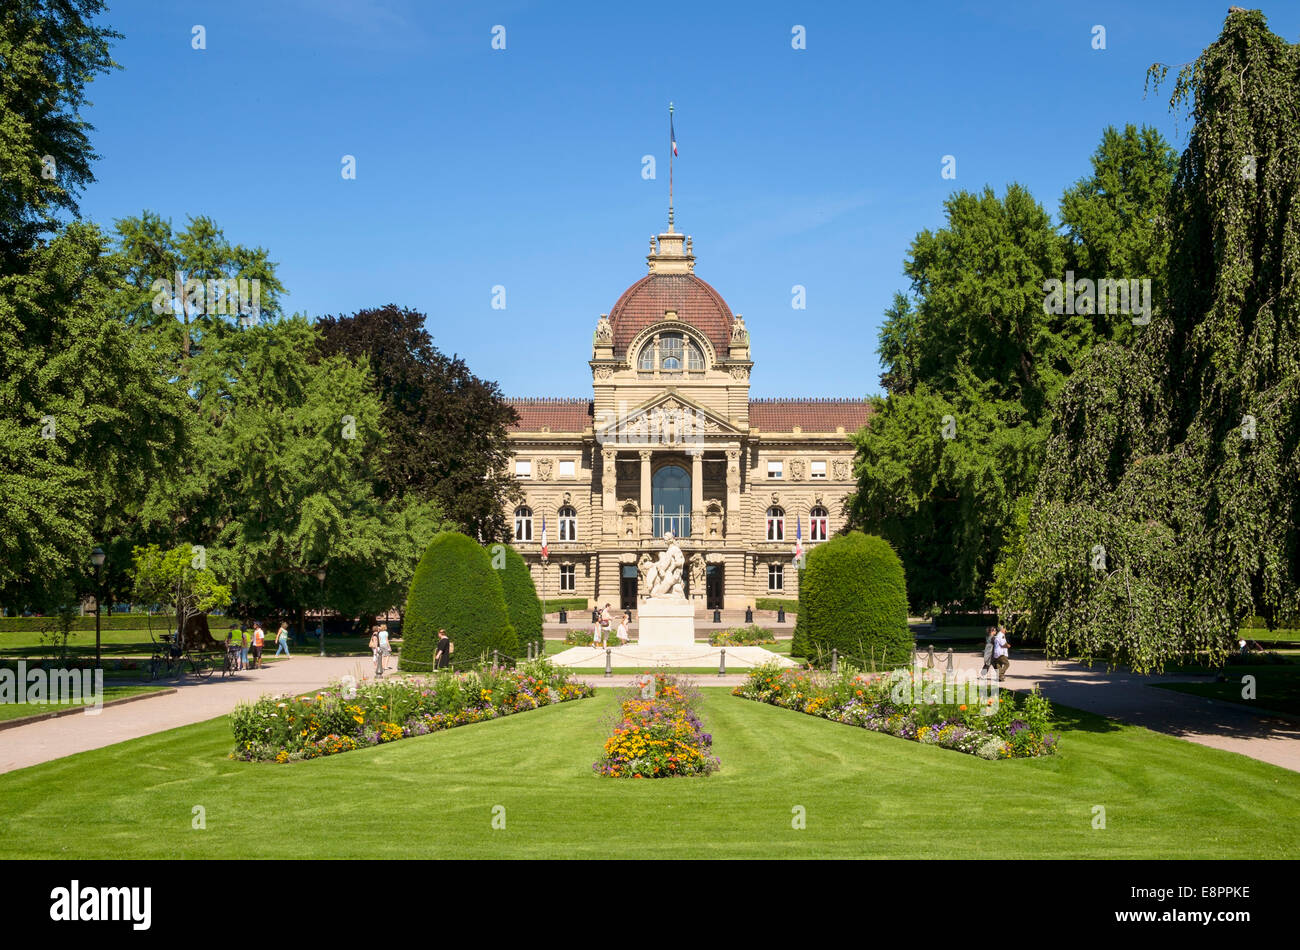 Palais du Rhin oder Palast des Rheins in Straßburg, Frankreich, Europa Stockfoto